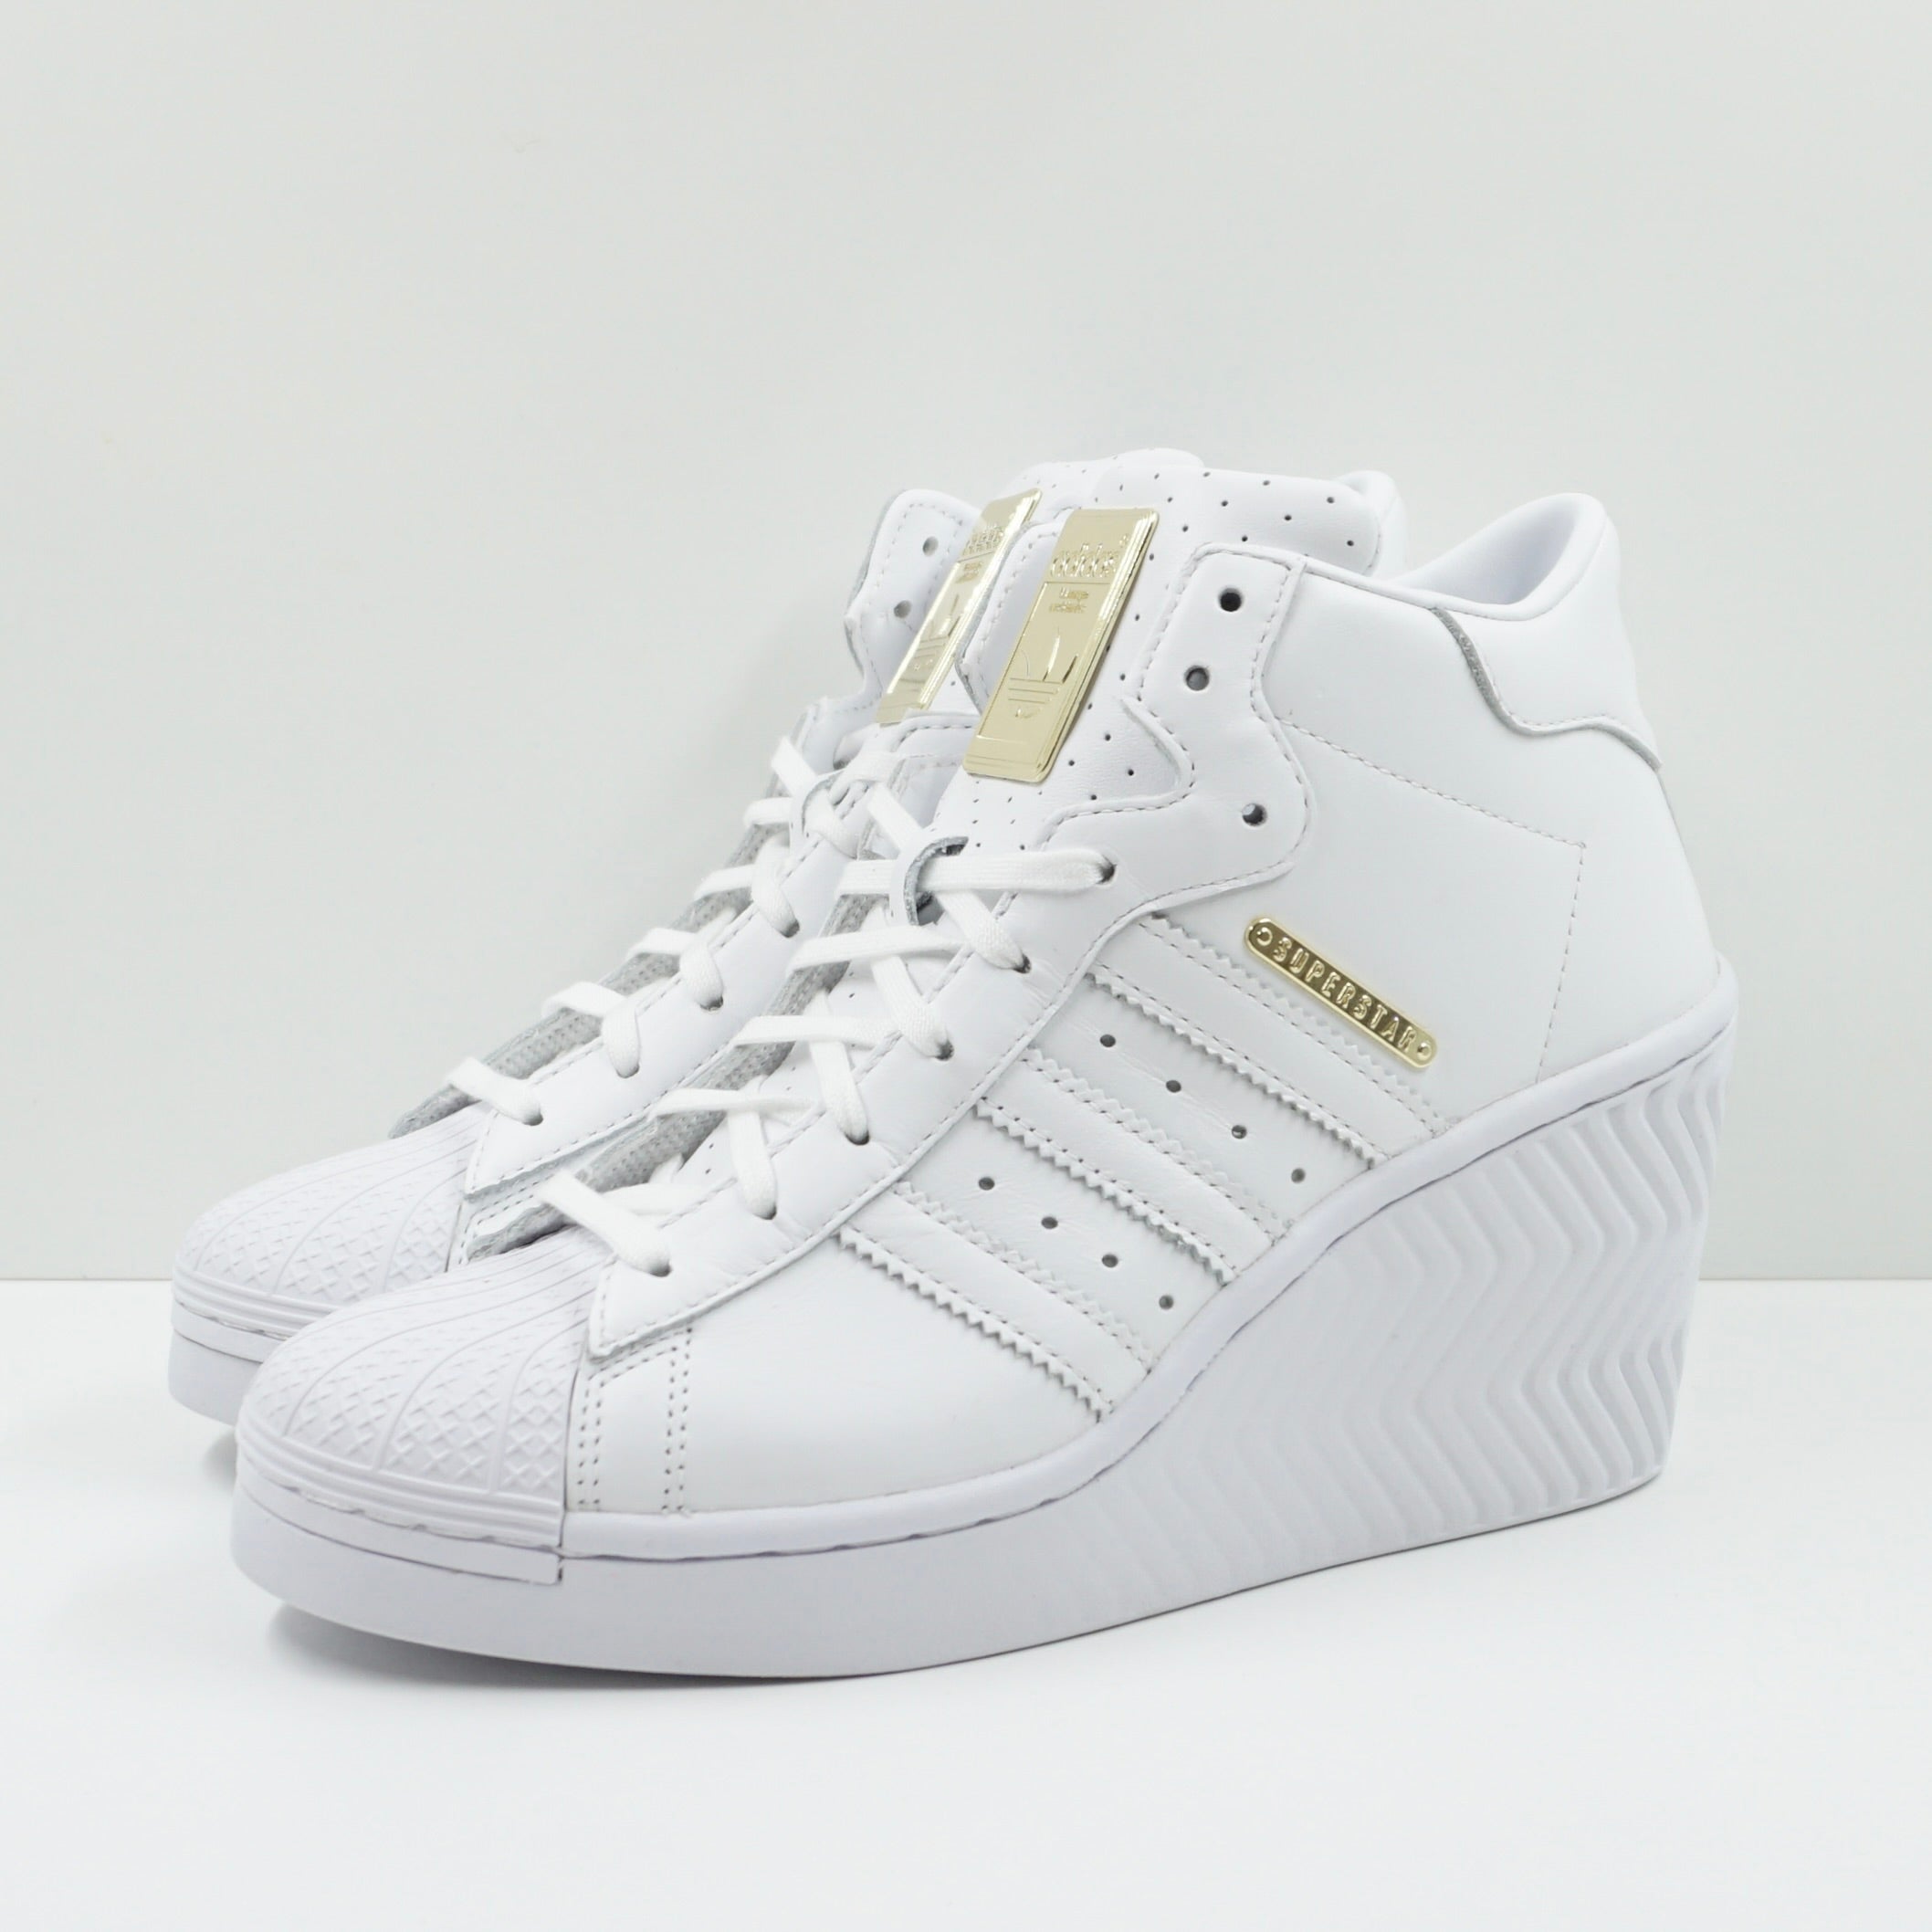 Adidas Superstar Ellure White Gold Metallic (W)